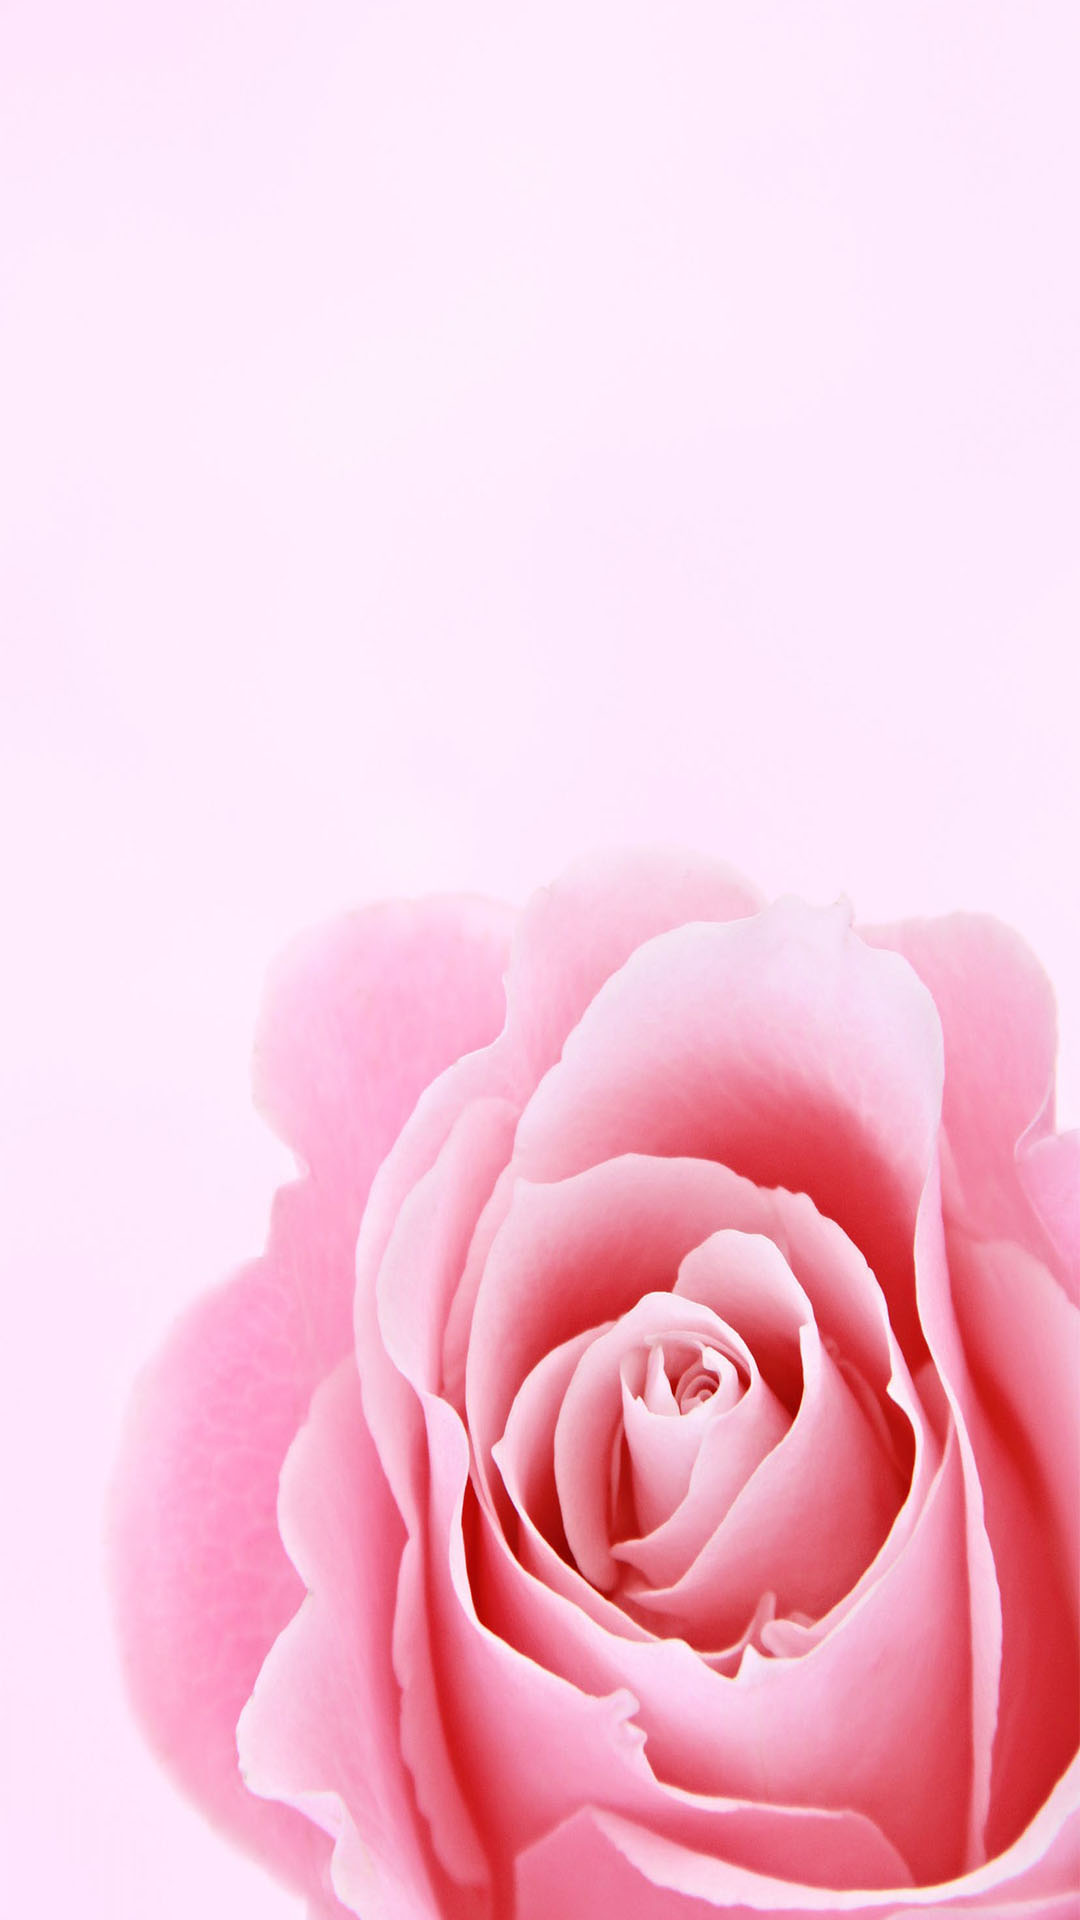 Hình nền hoa màu hồng nhạt